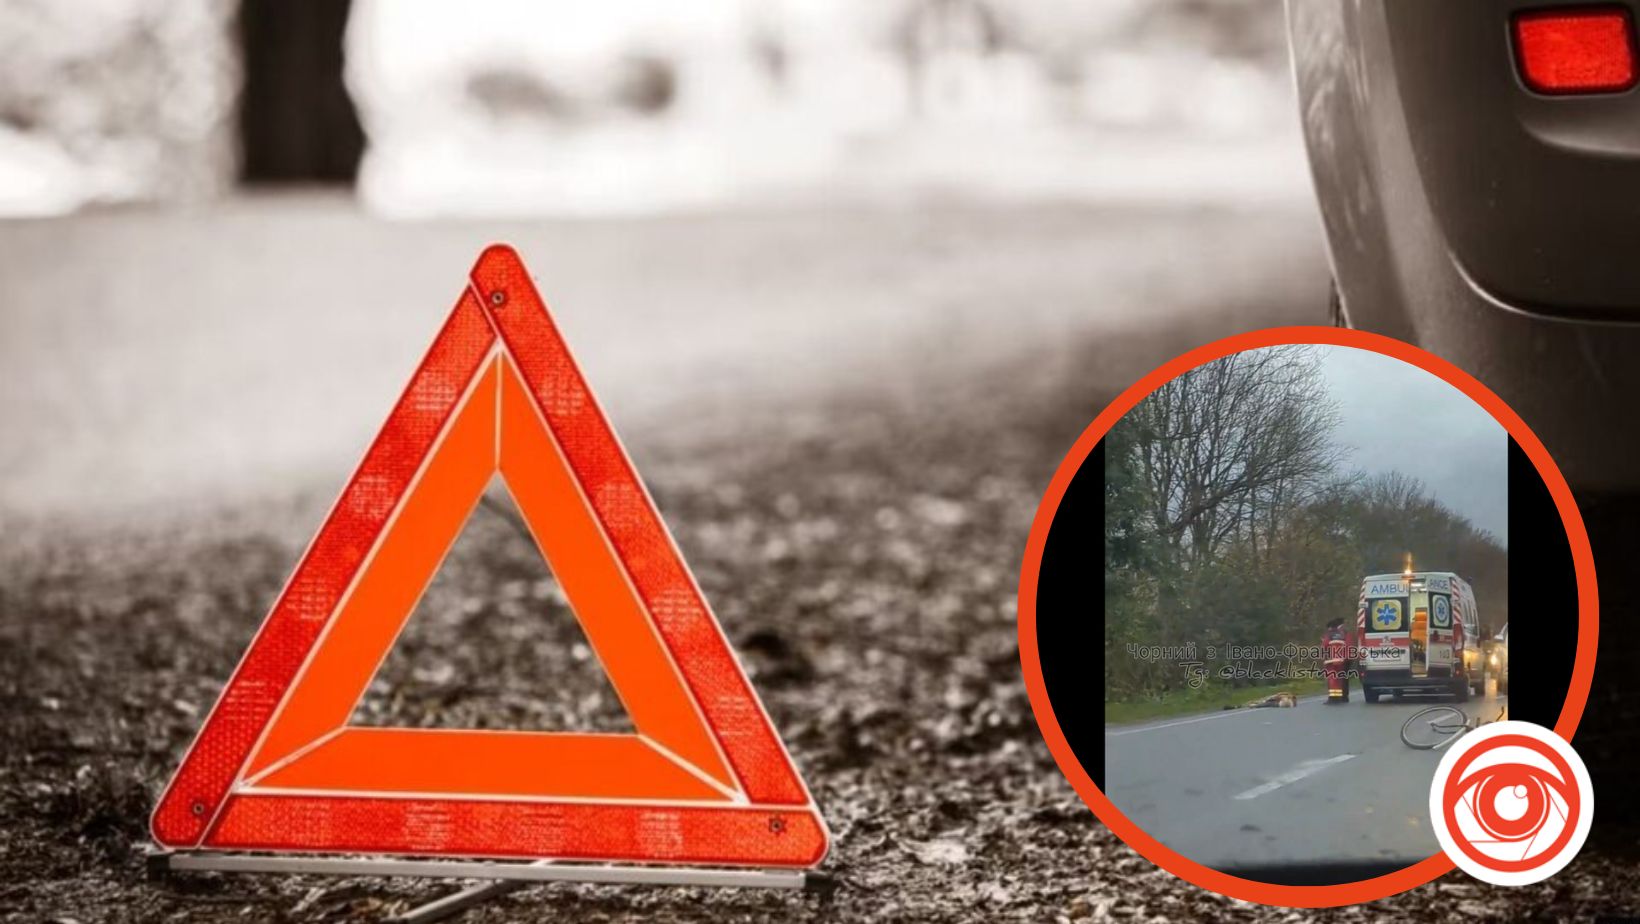 Сьогодні, 26 жовтня, на дорозі в Голені сталася дорожньо-транспортна пригода, під колесами автомобіля загинув велосипедист.